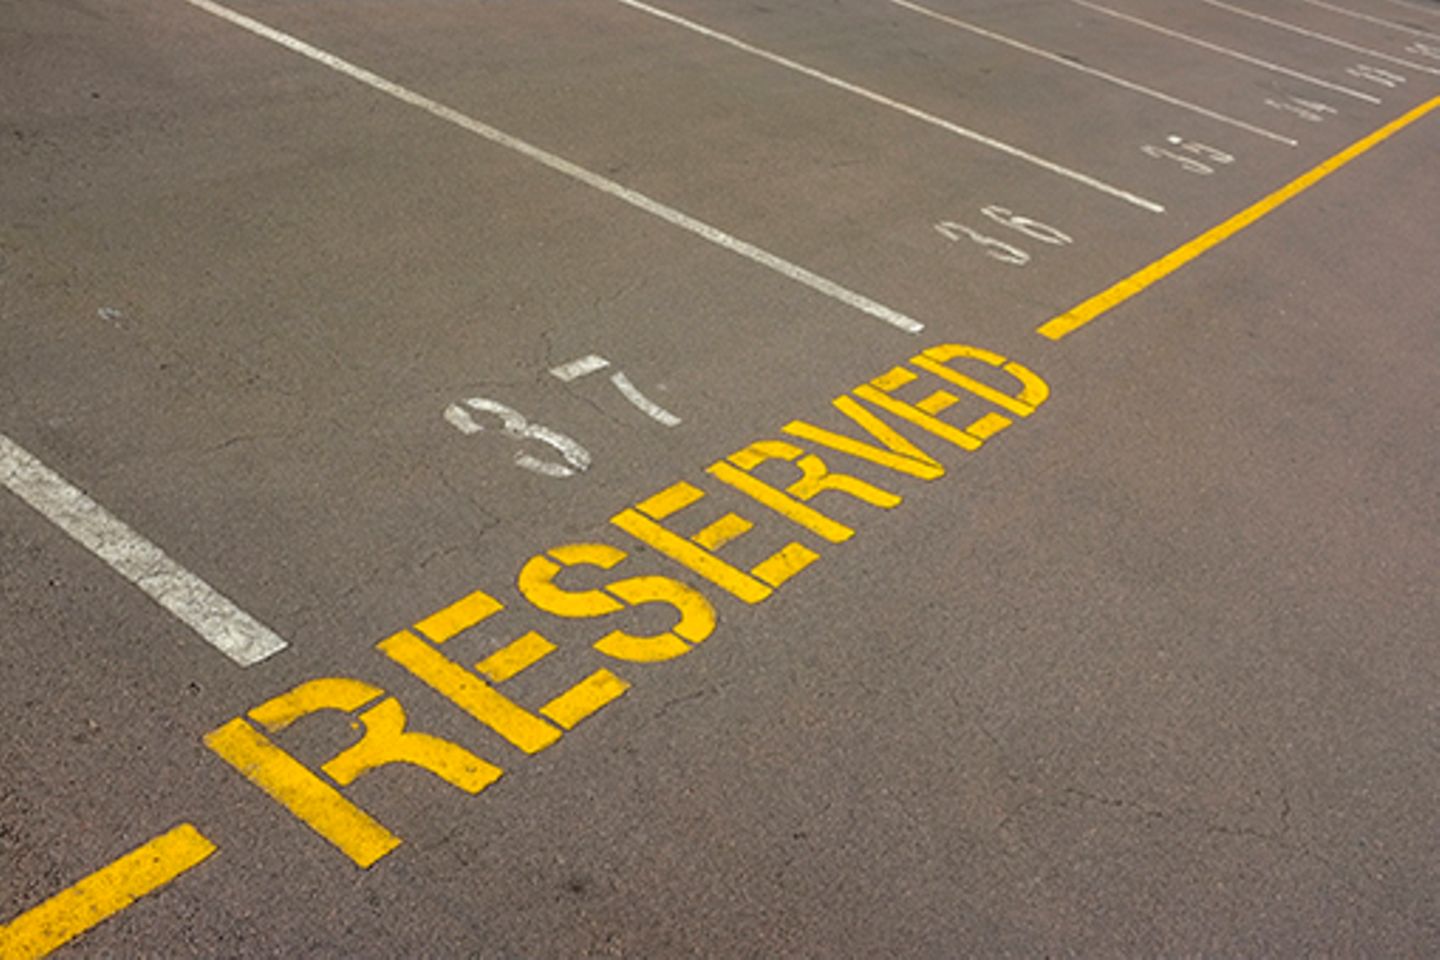 Foto leerer Parkplätze, einer mit der Aufschrift “reserved”.